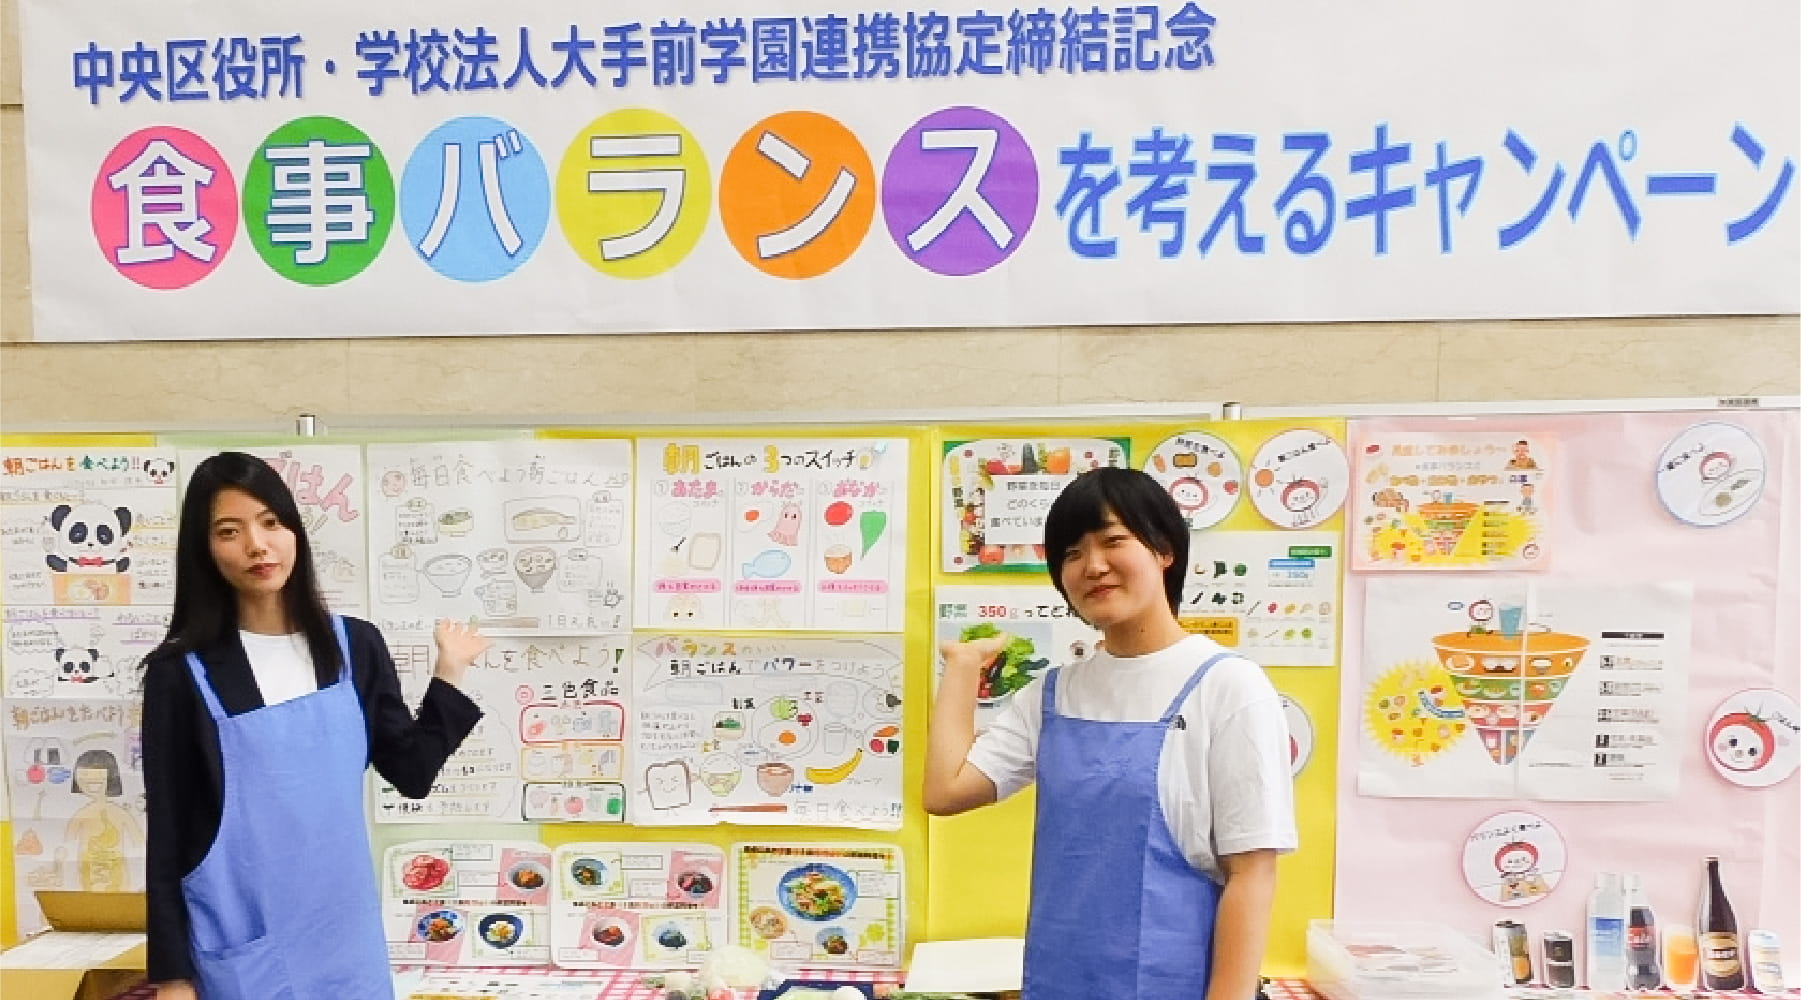 大阪の食と栄養の発展をここから！ 中央区と「食事バランスを考えるキャンペーン」。